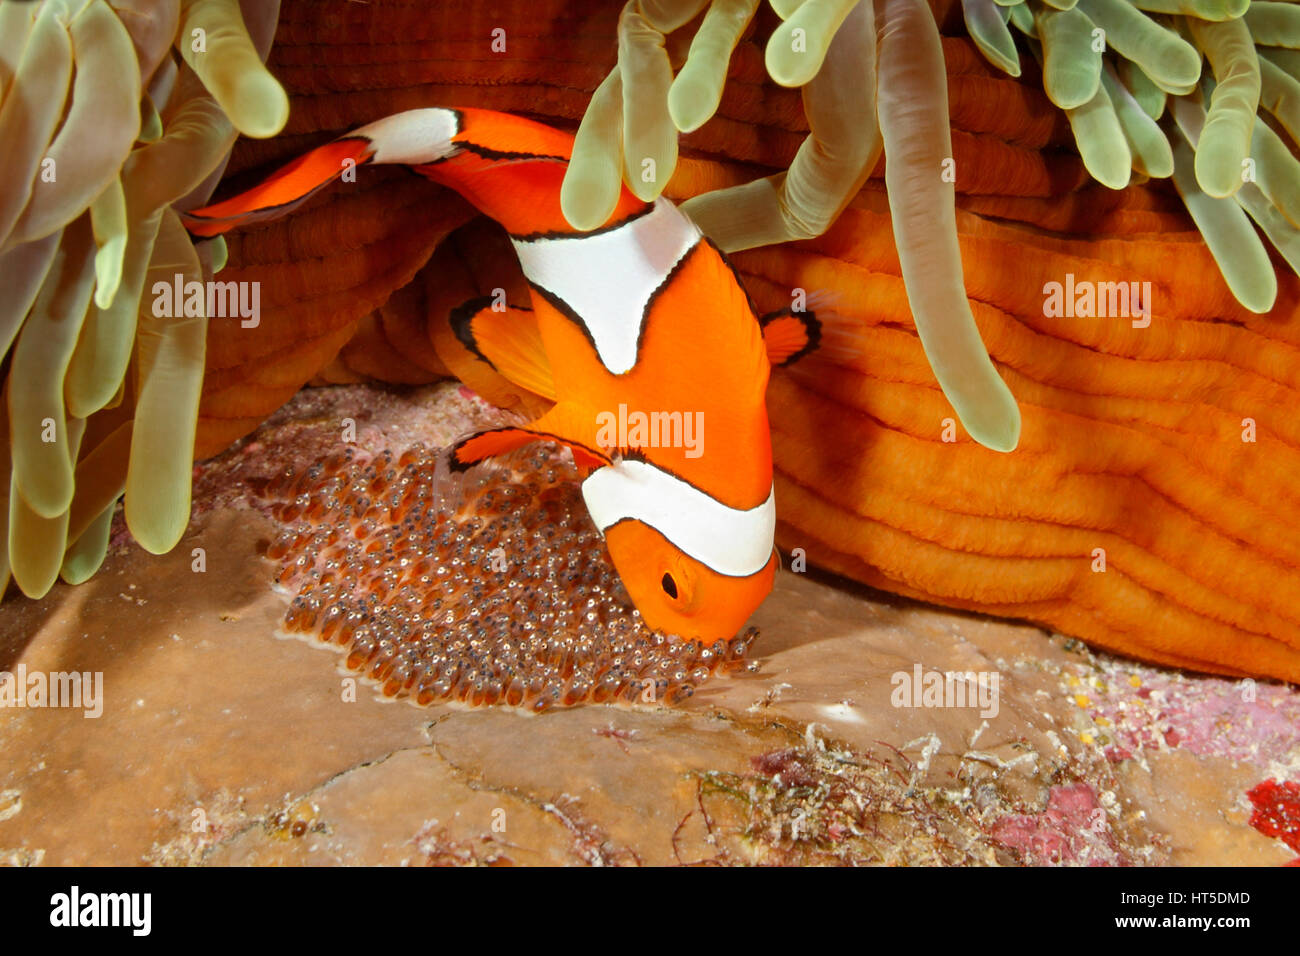 Clown Anemonefish, Amphiprion percula, tendendo le uova deposte alla base dell'ospite magnifico Anemone, Heteractis magnifica. Foto Stock